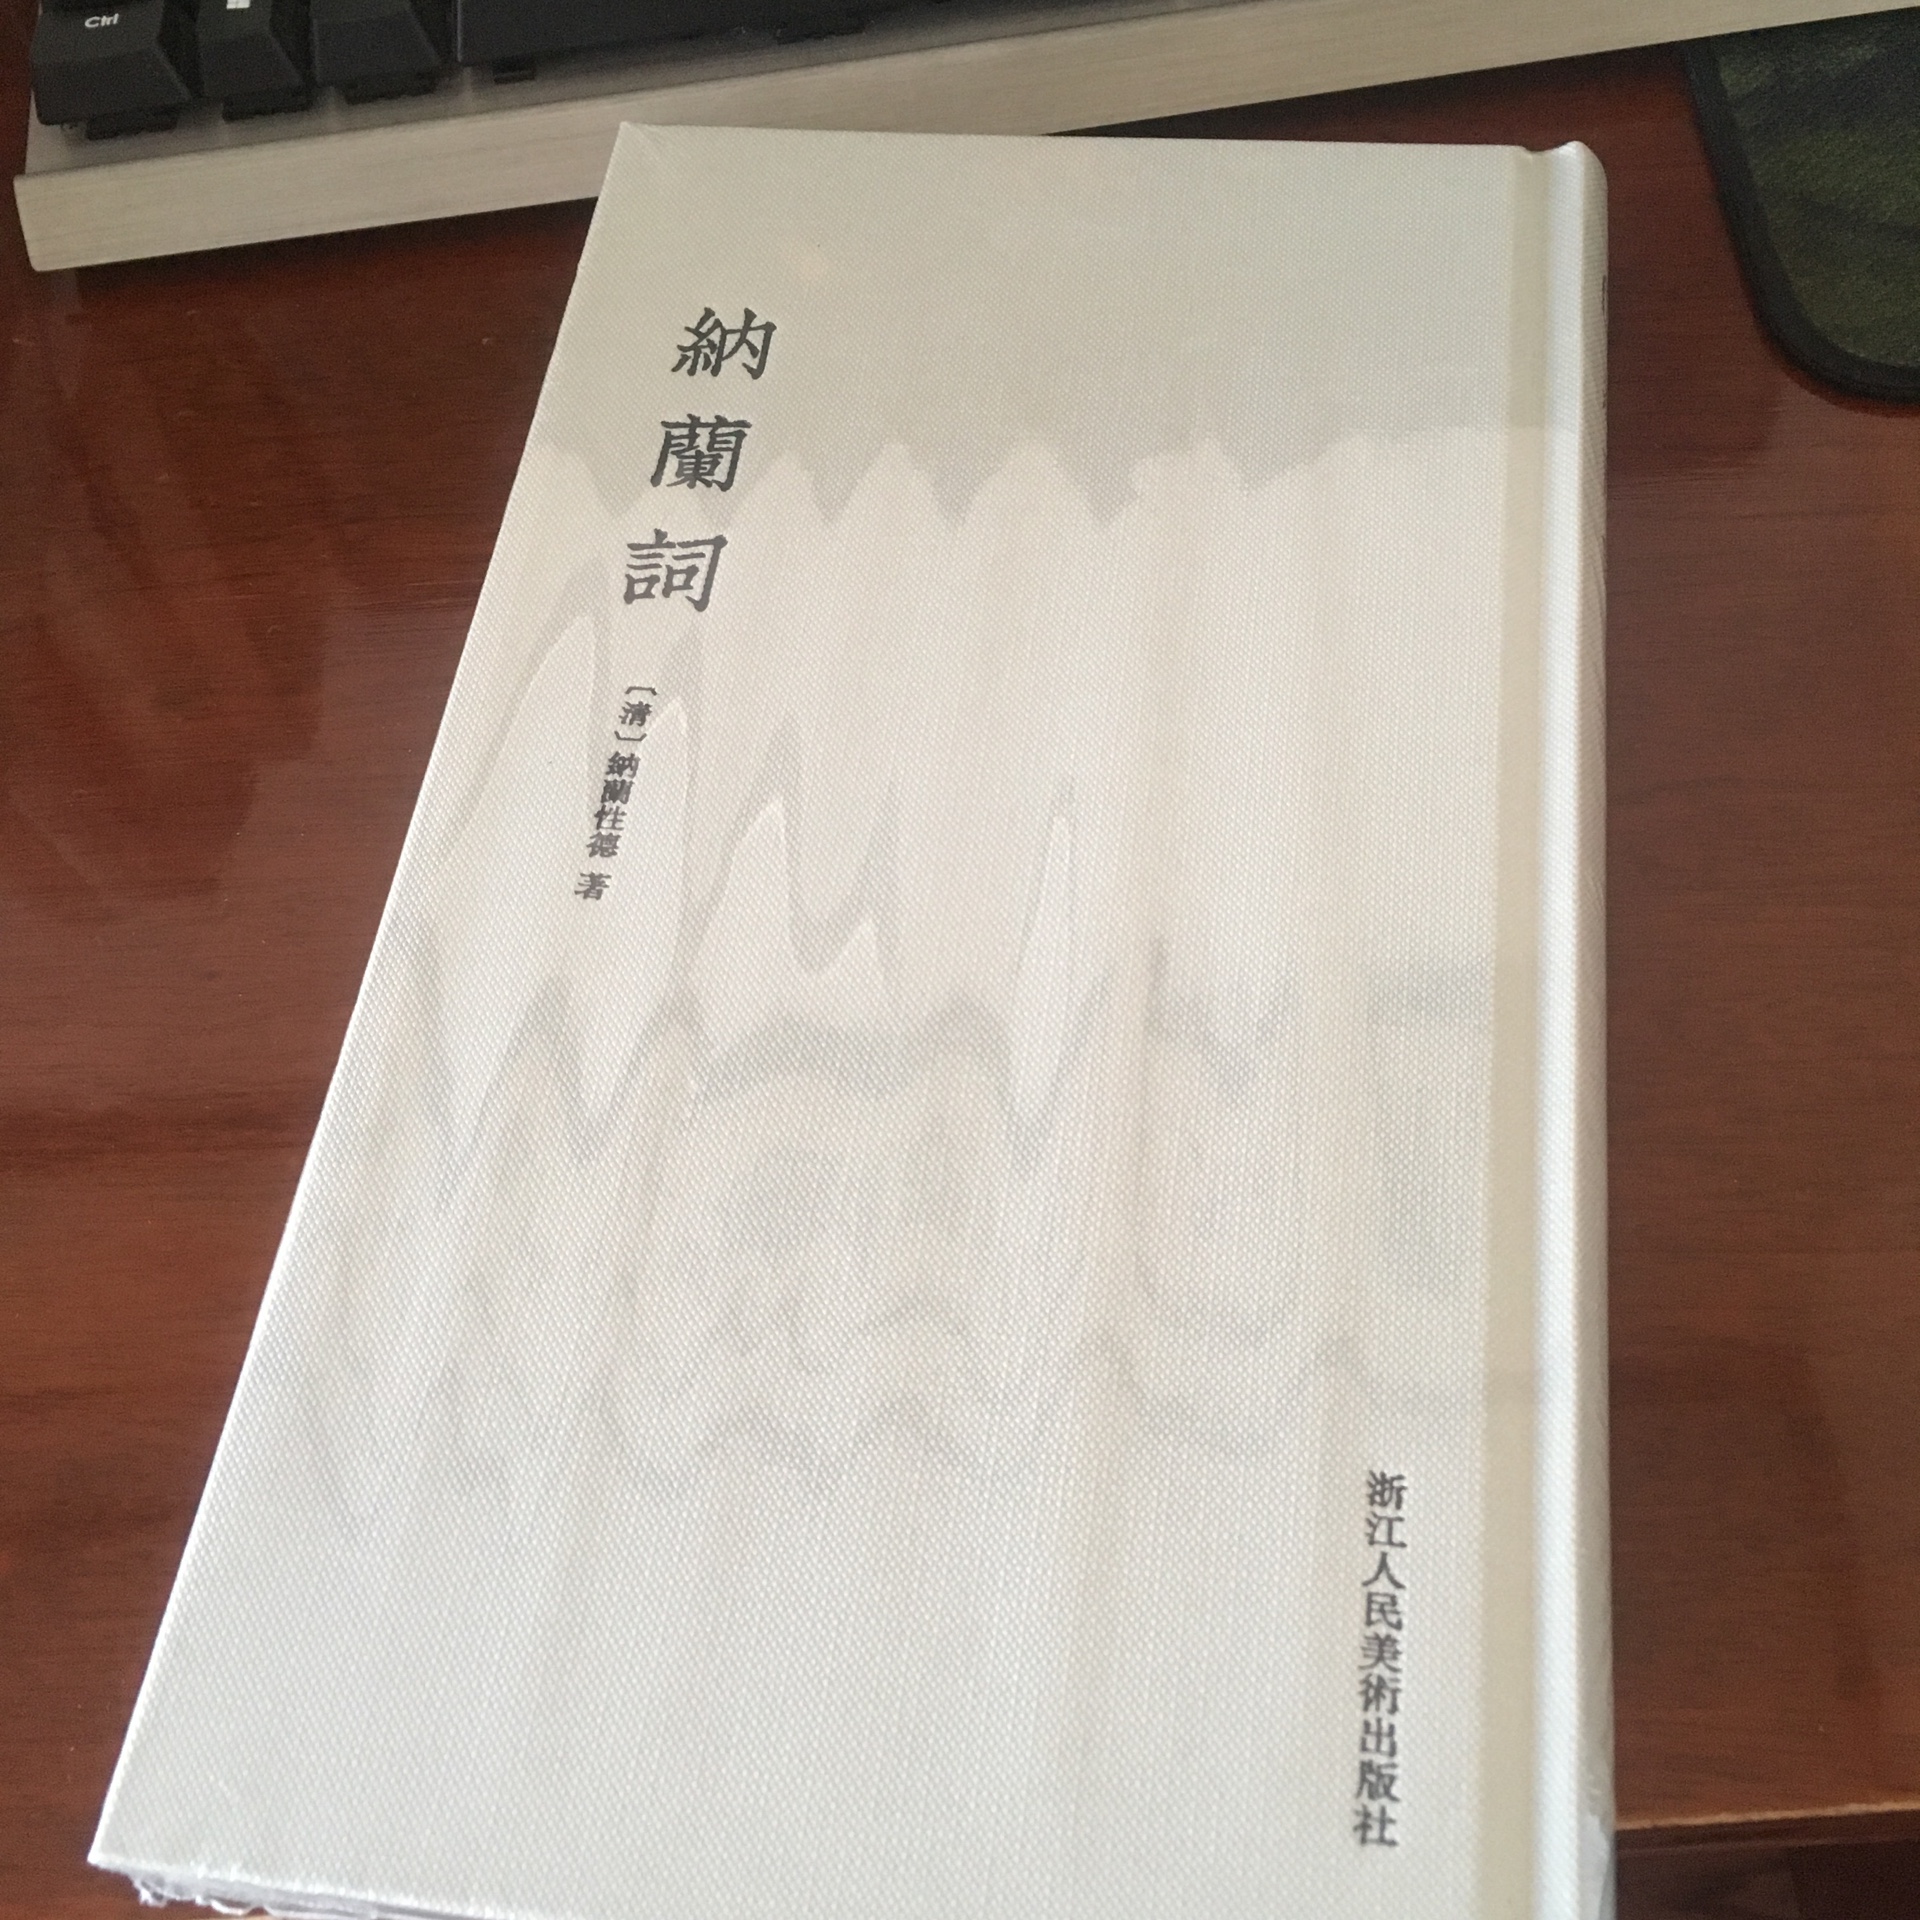 浙江人民美术出版社就是品质的保证 太棒了 细长开本